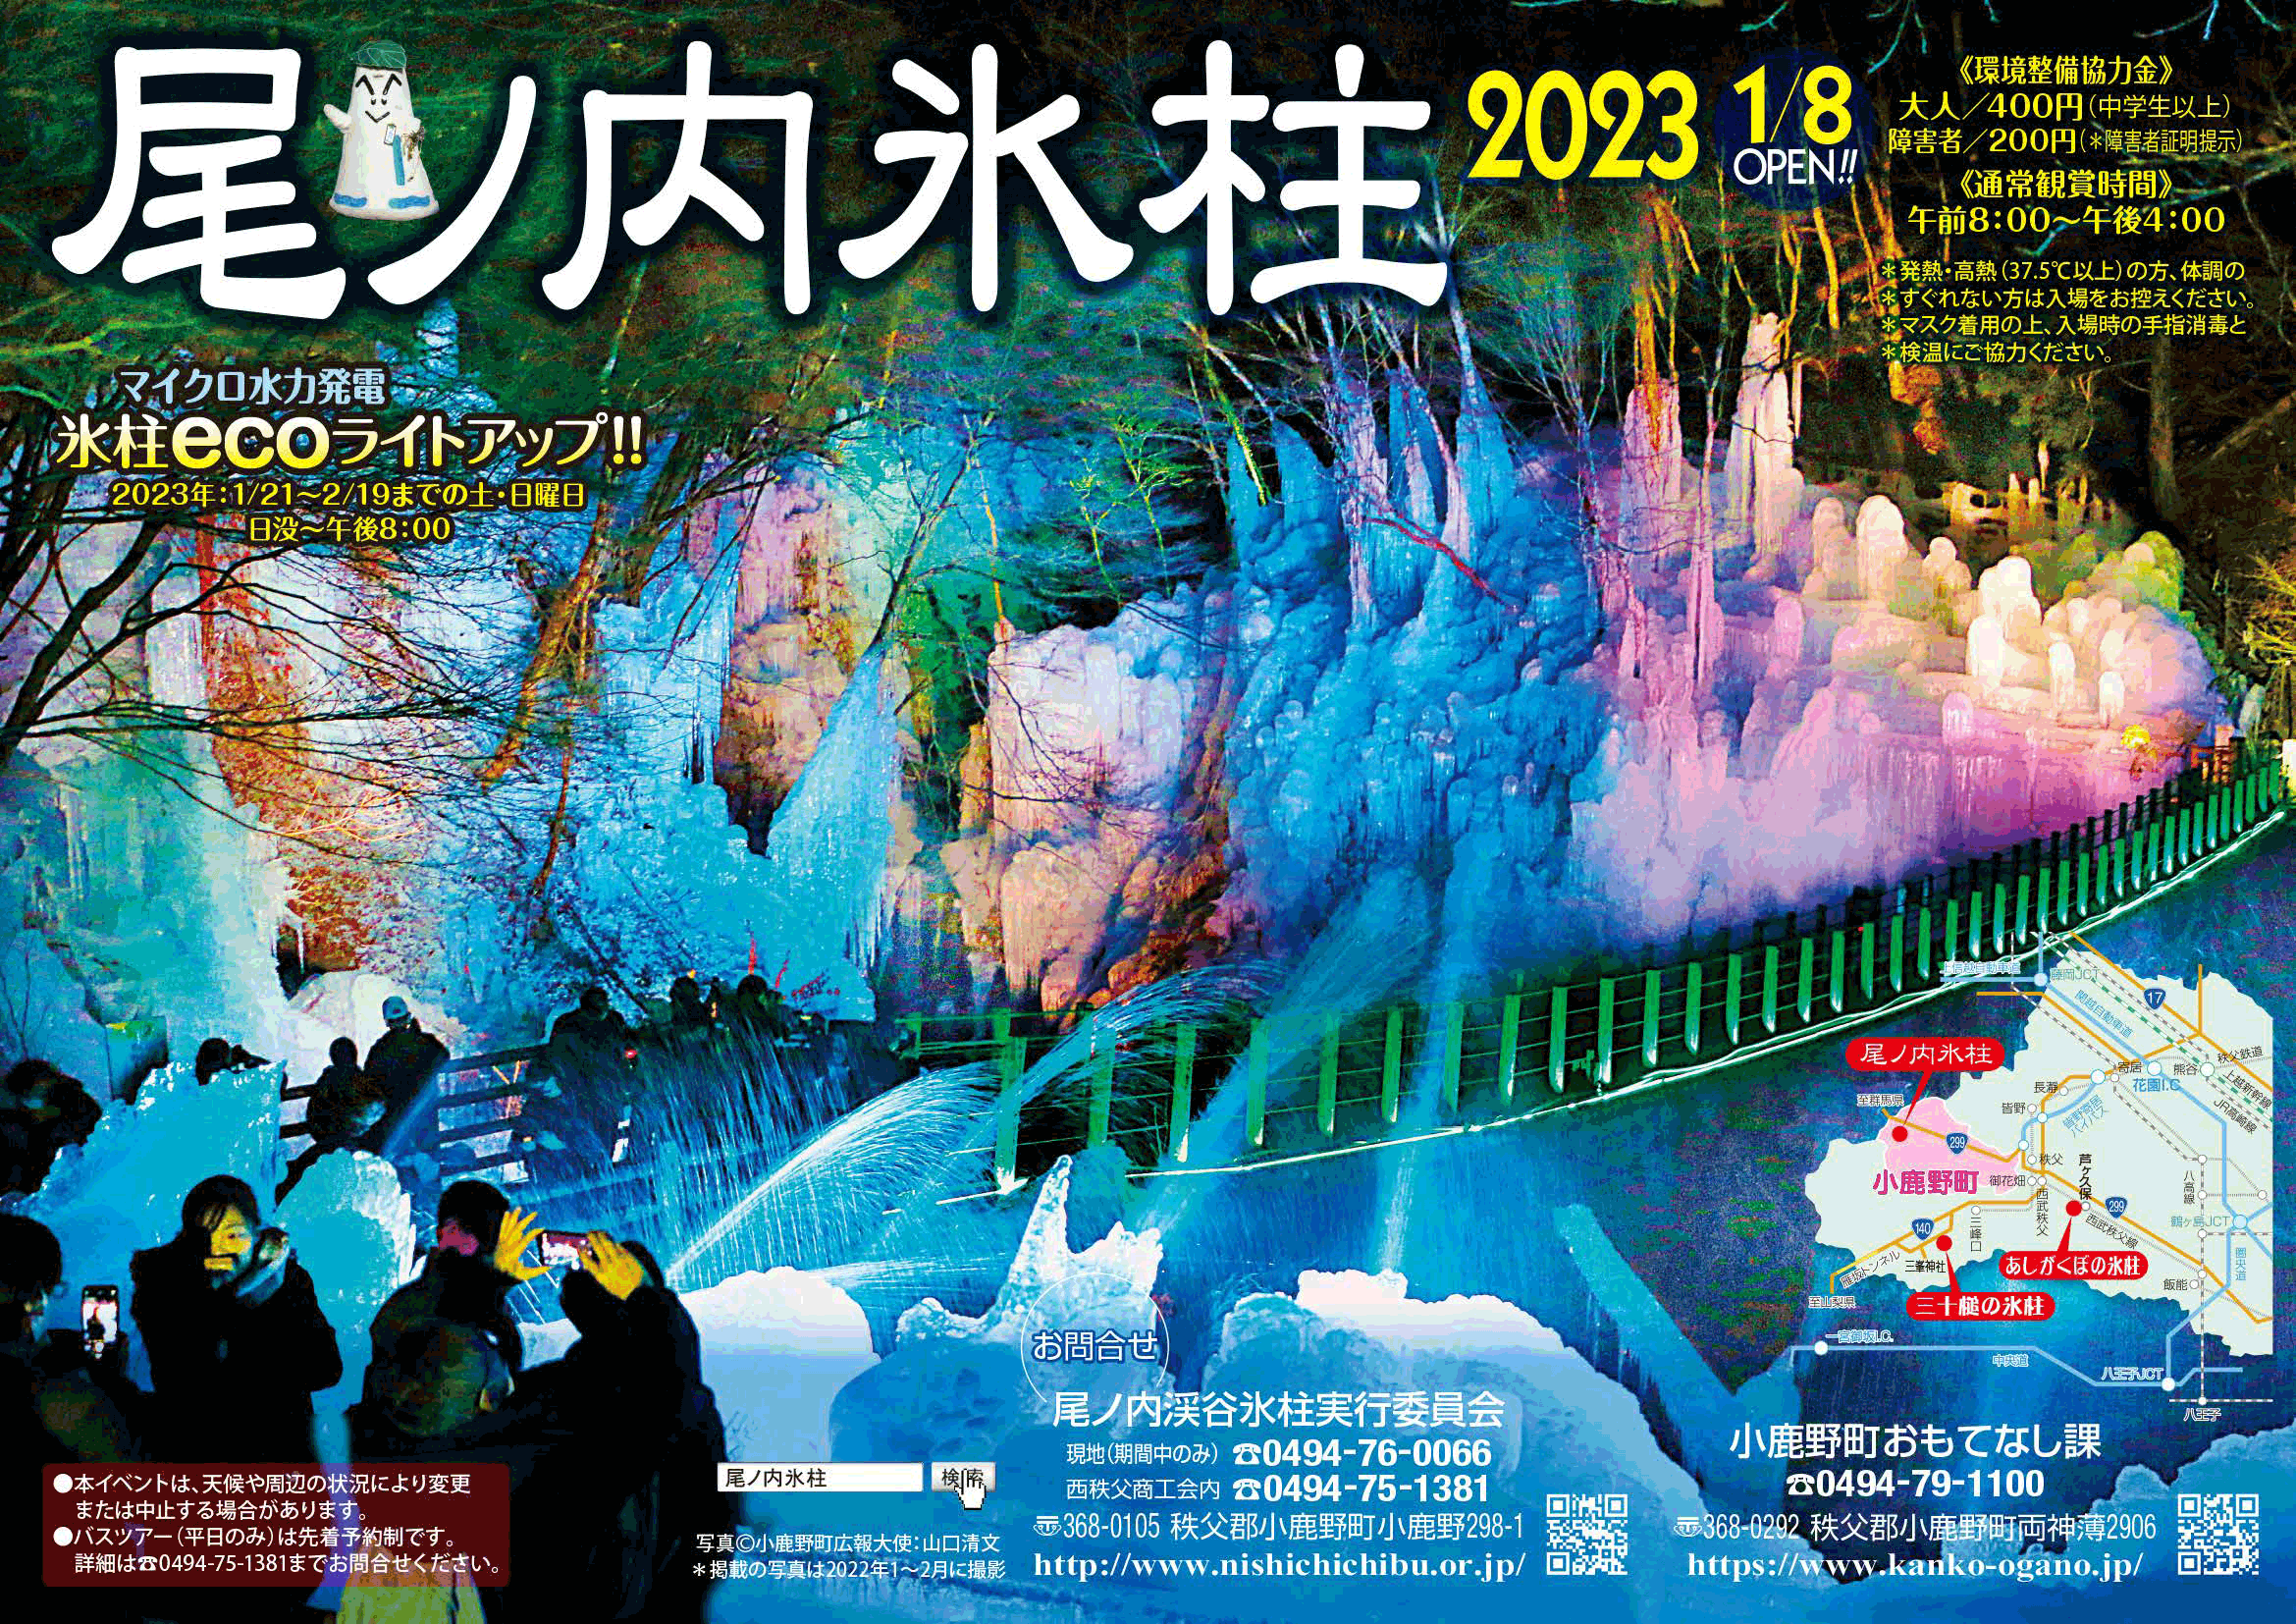 尾ノ内 氷柱のイメージ写真